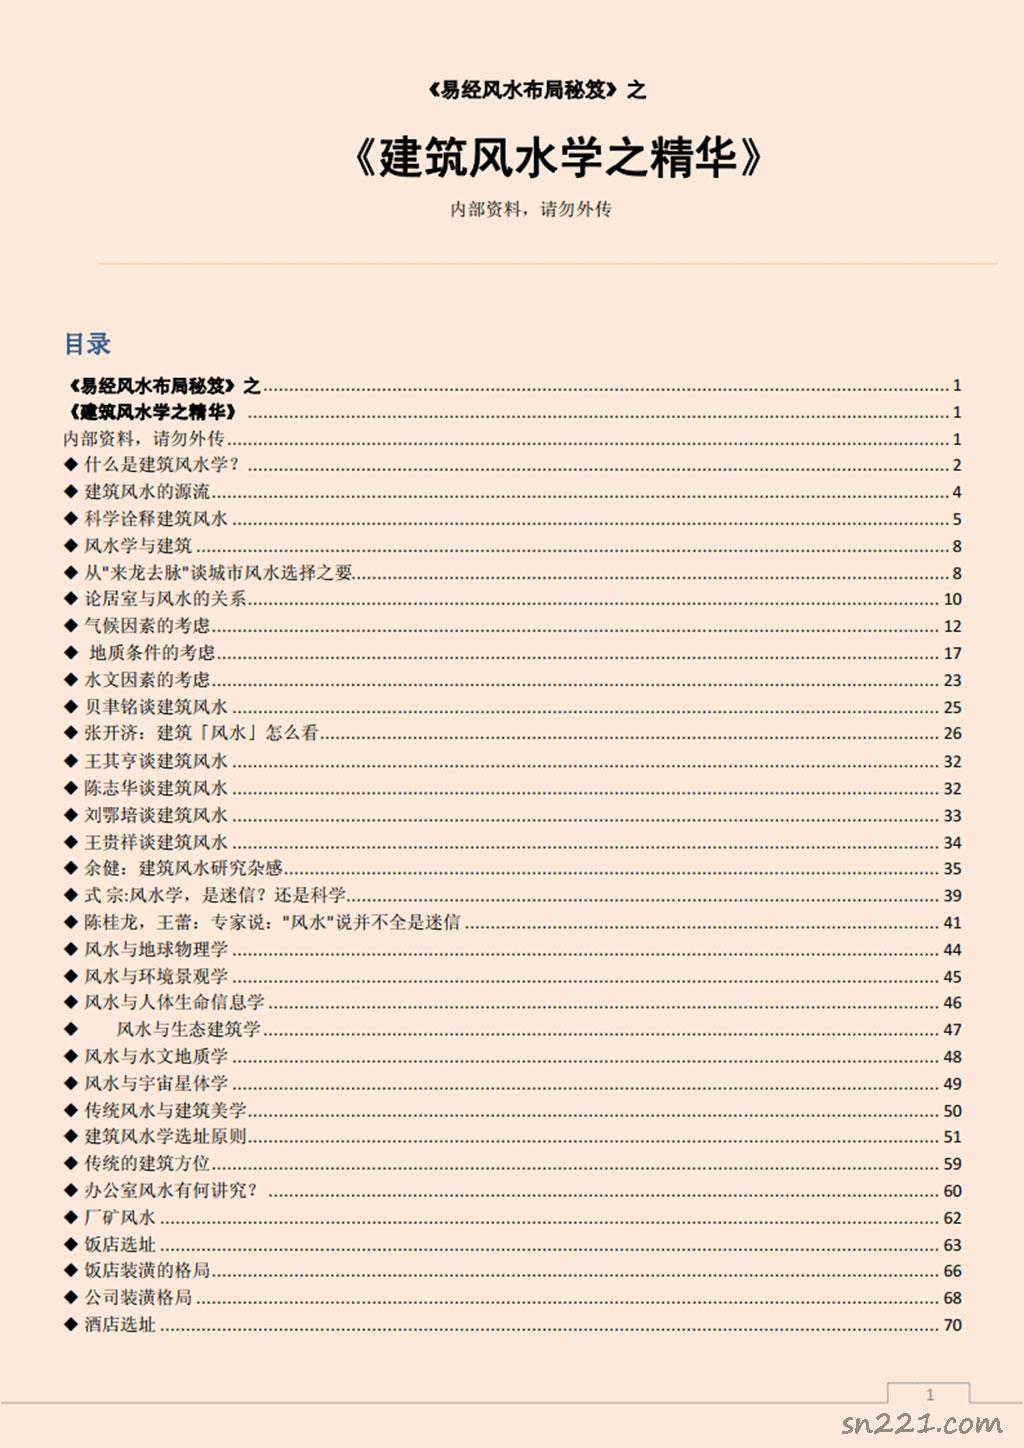 易經風水佈局秘笈之《建築風水學之精華》.pdf